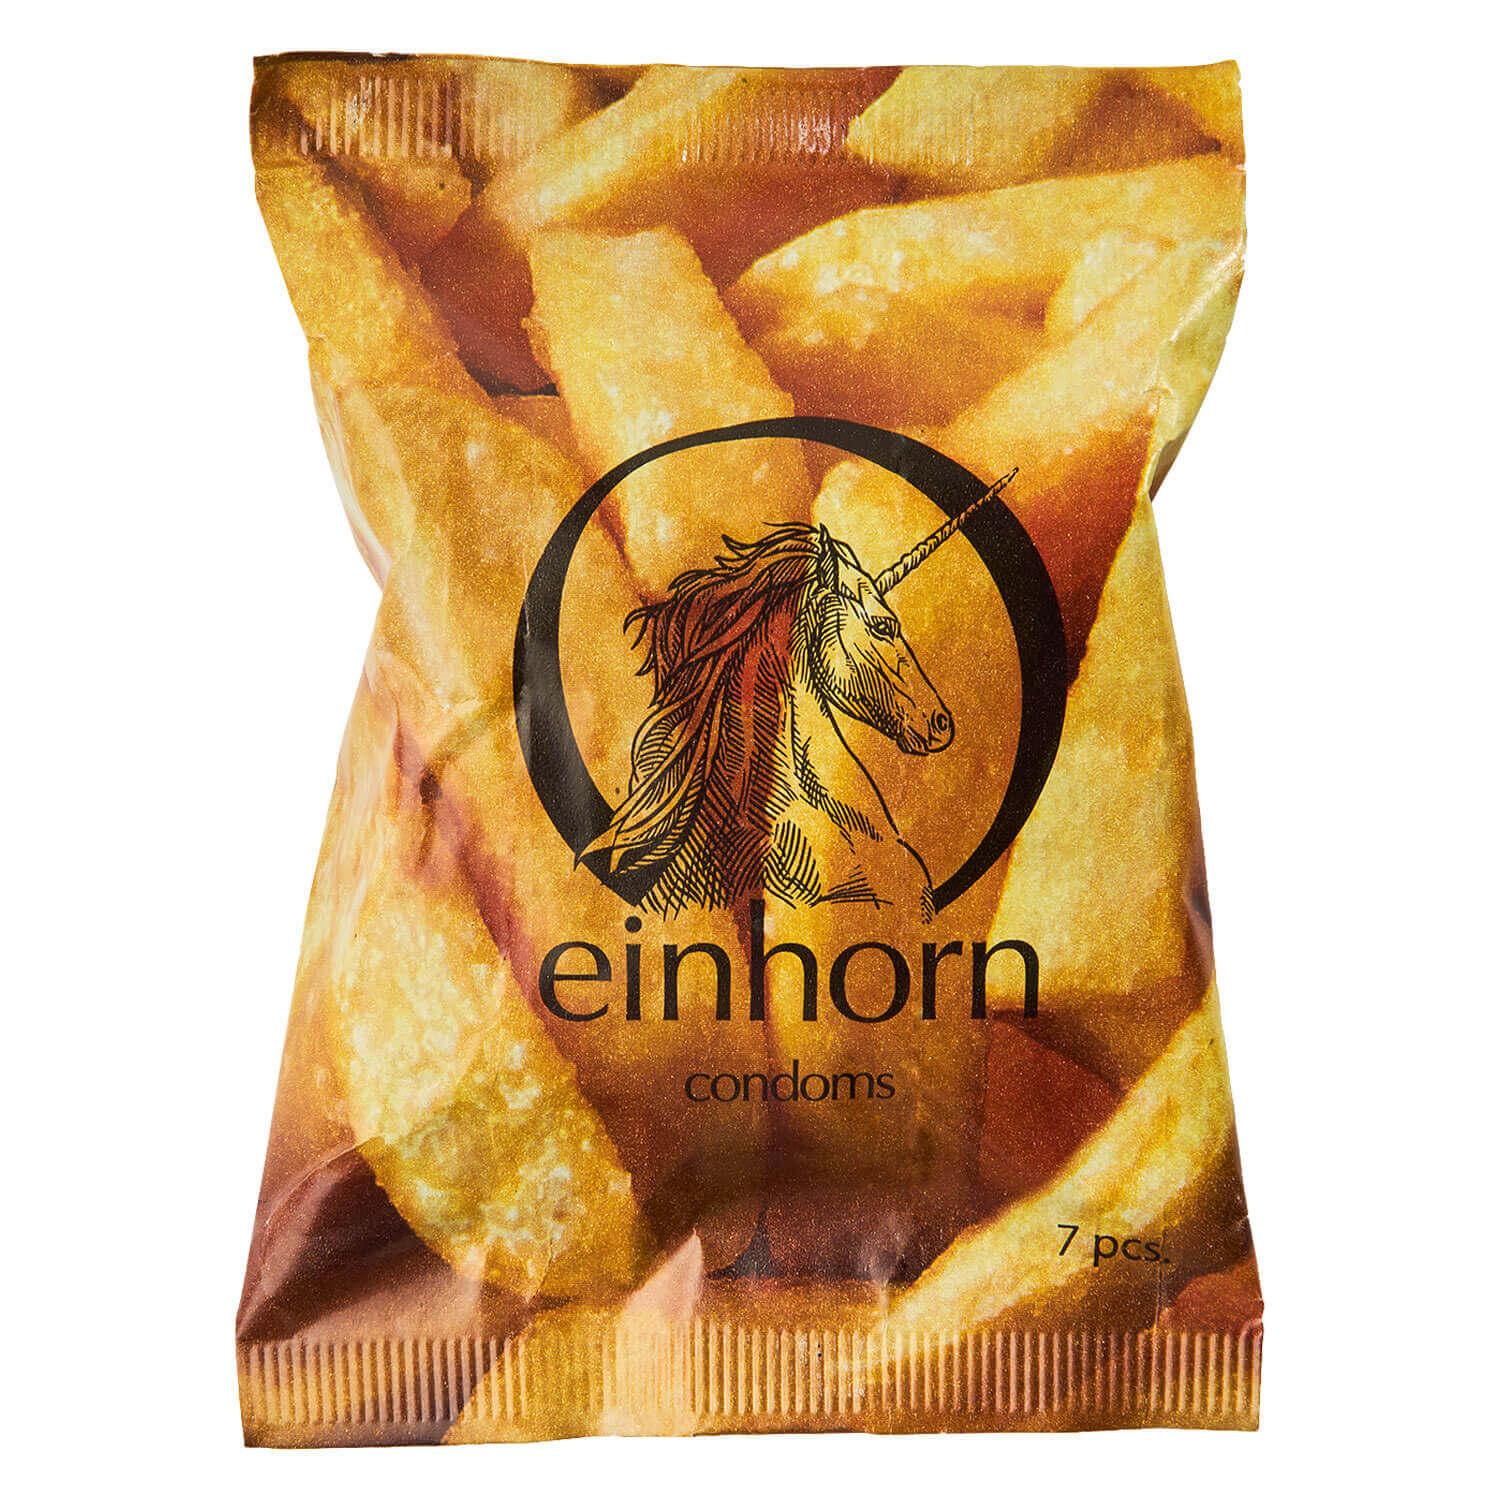 einhorn - Condoms Foodporn